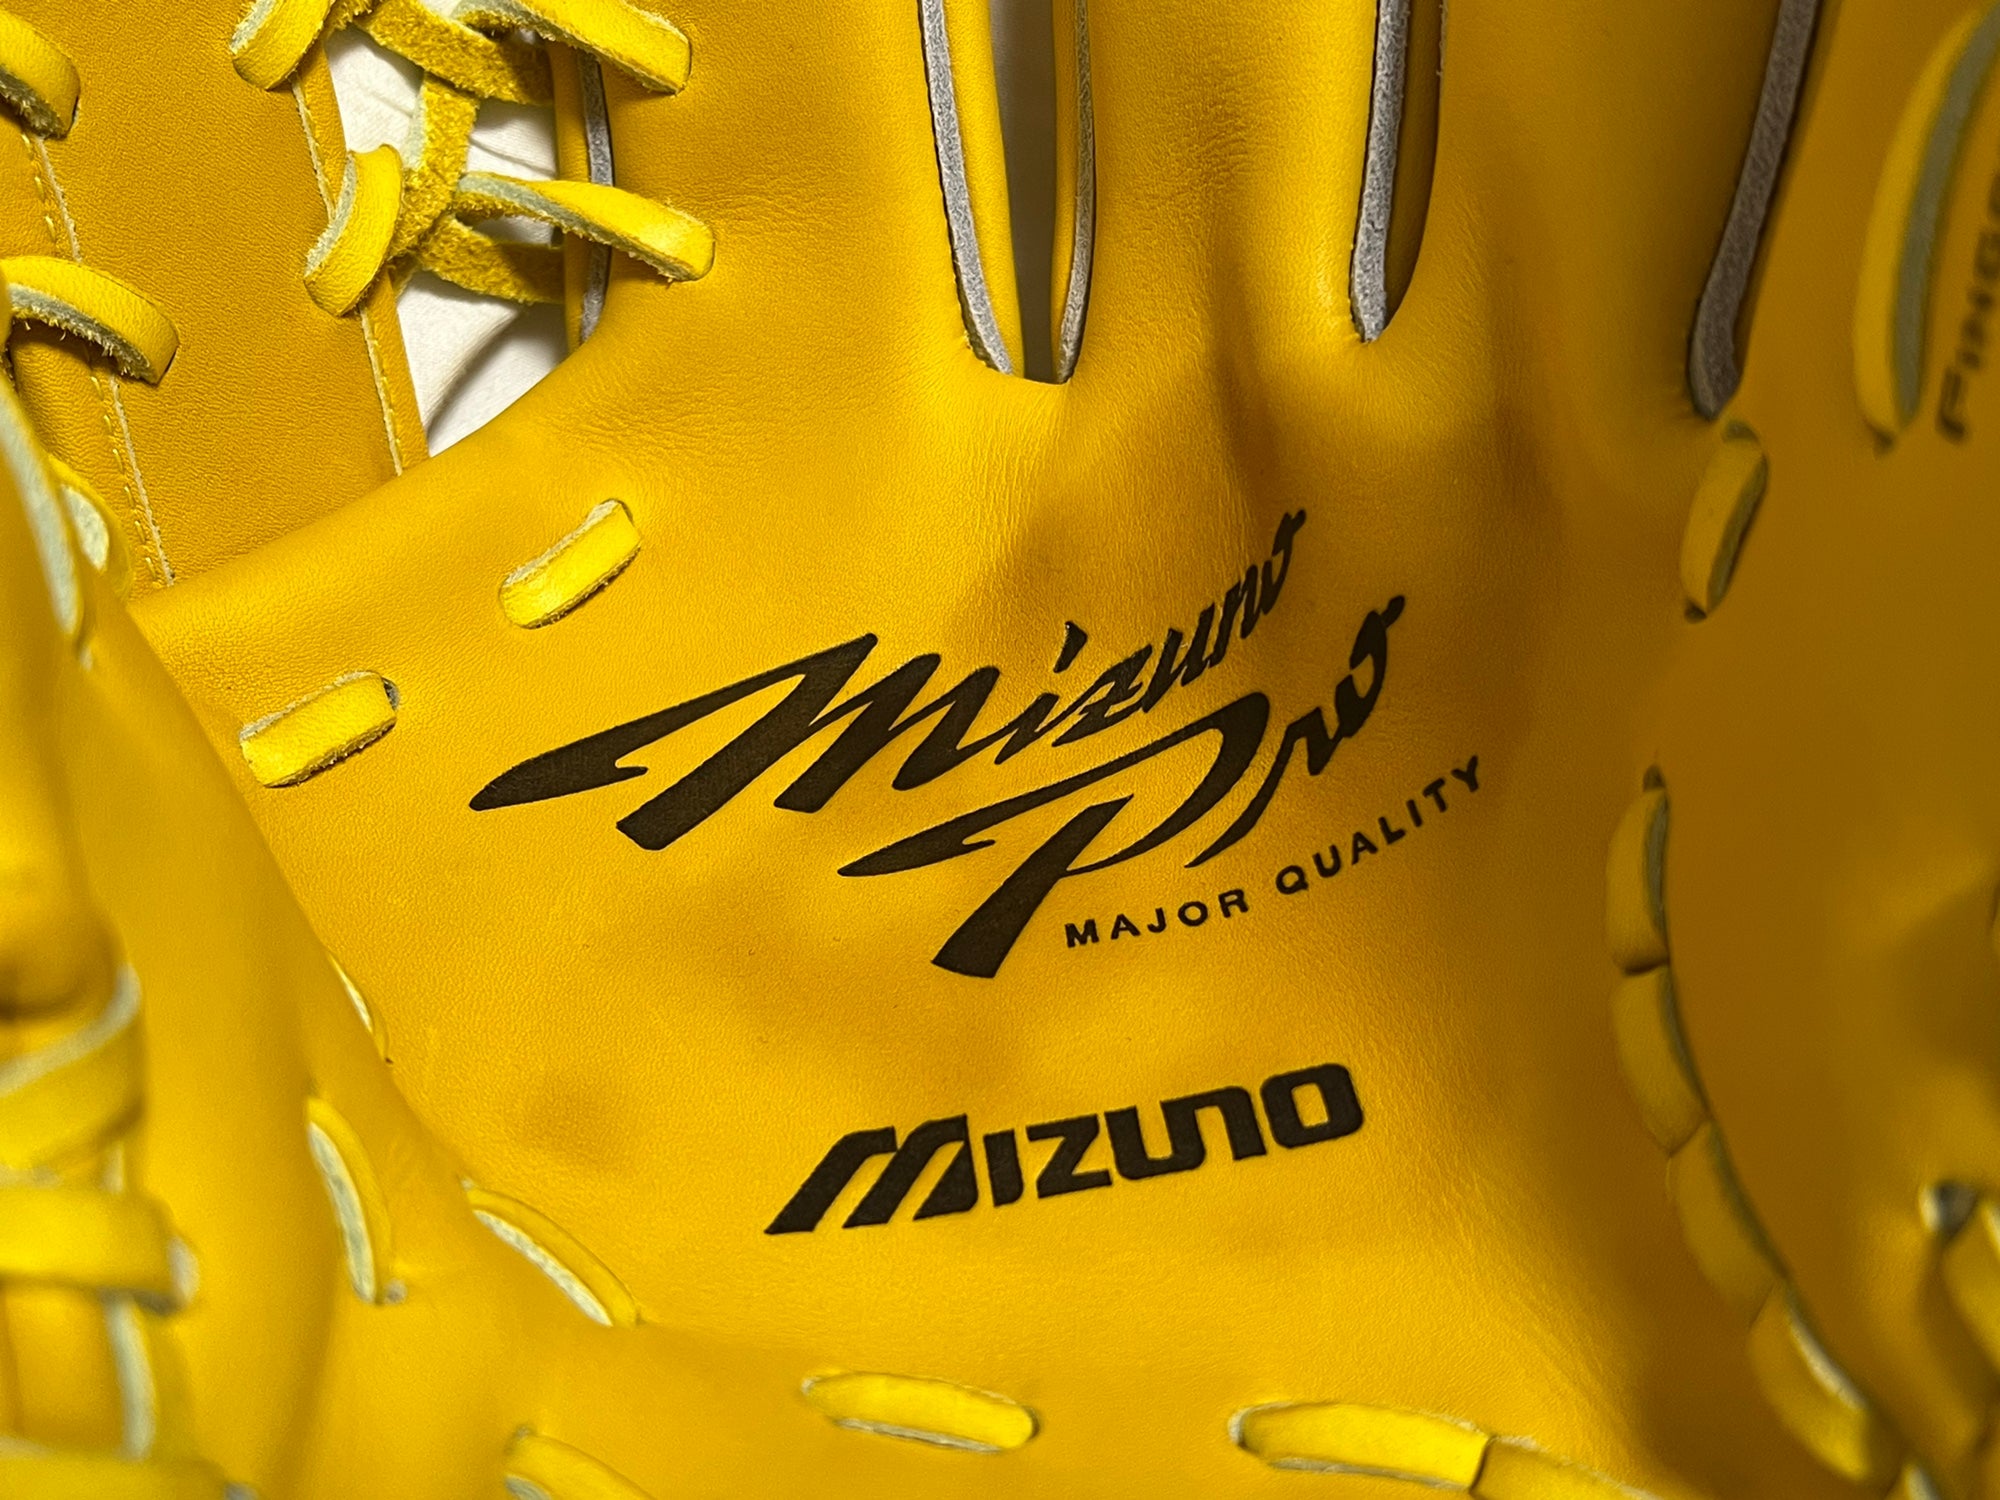 Mizuno Supreme Leather Baseball Glove 12.5 Inches MZS 1250 Max